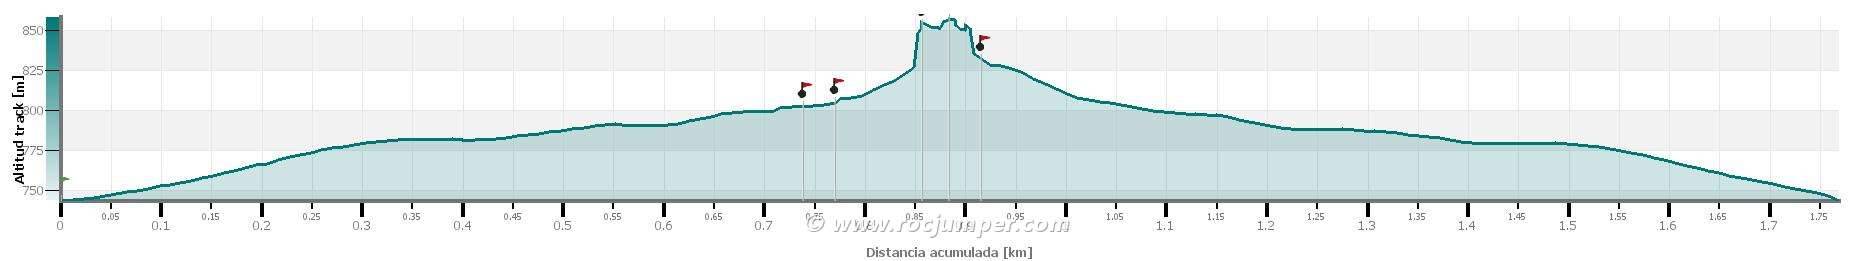 Altimetría - Vía Ferrata Castellot de Baells 